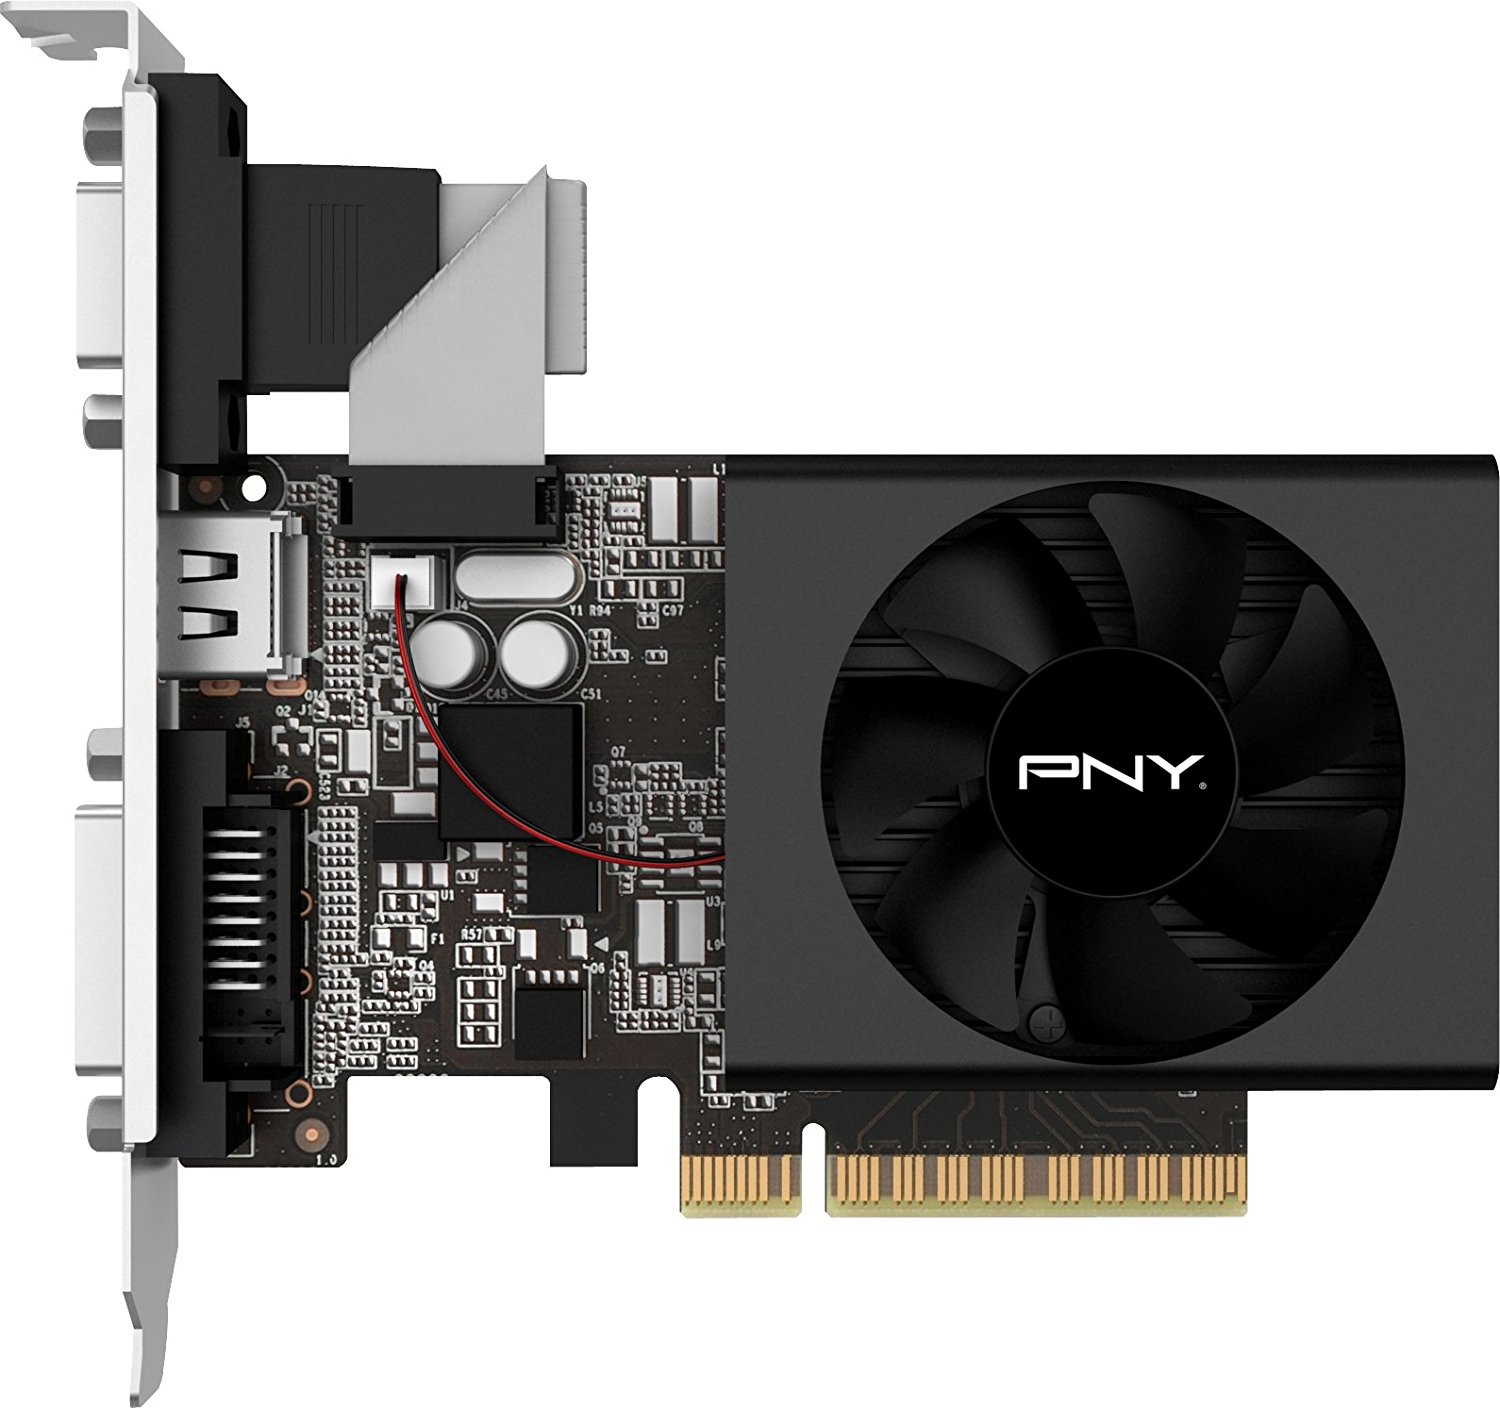 PNY NVIDIA GeFORCE GT 710 2GB DDR3 VGA/DVI/HDMI TARJETA DE VIDEO PCI-EXPRESS DE BAJO PERFIL